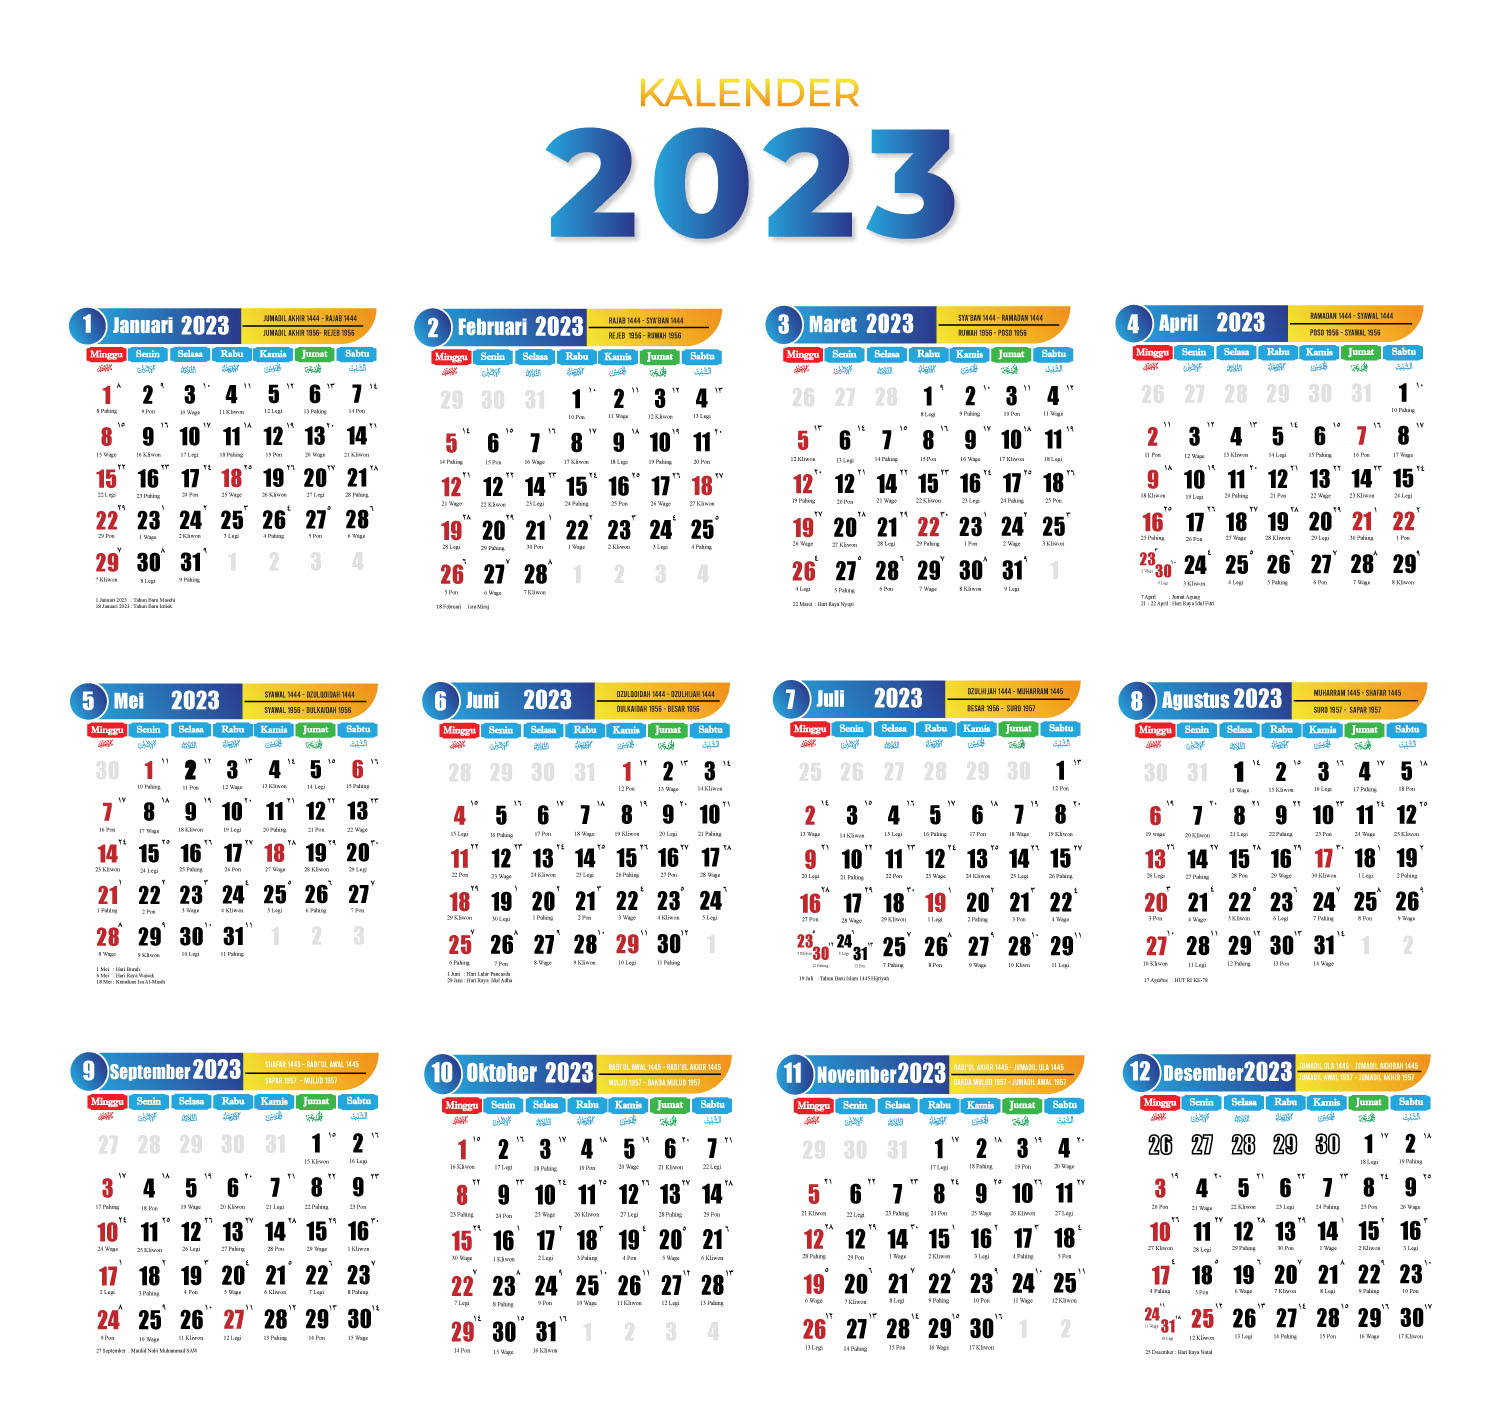 Download Kalender 2023 Format JPG, PNG, PDF, CDR, PSD, AI, Gratis!  kalender 2023 free download download kalender 2023 pdf download kalender 2023